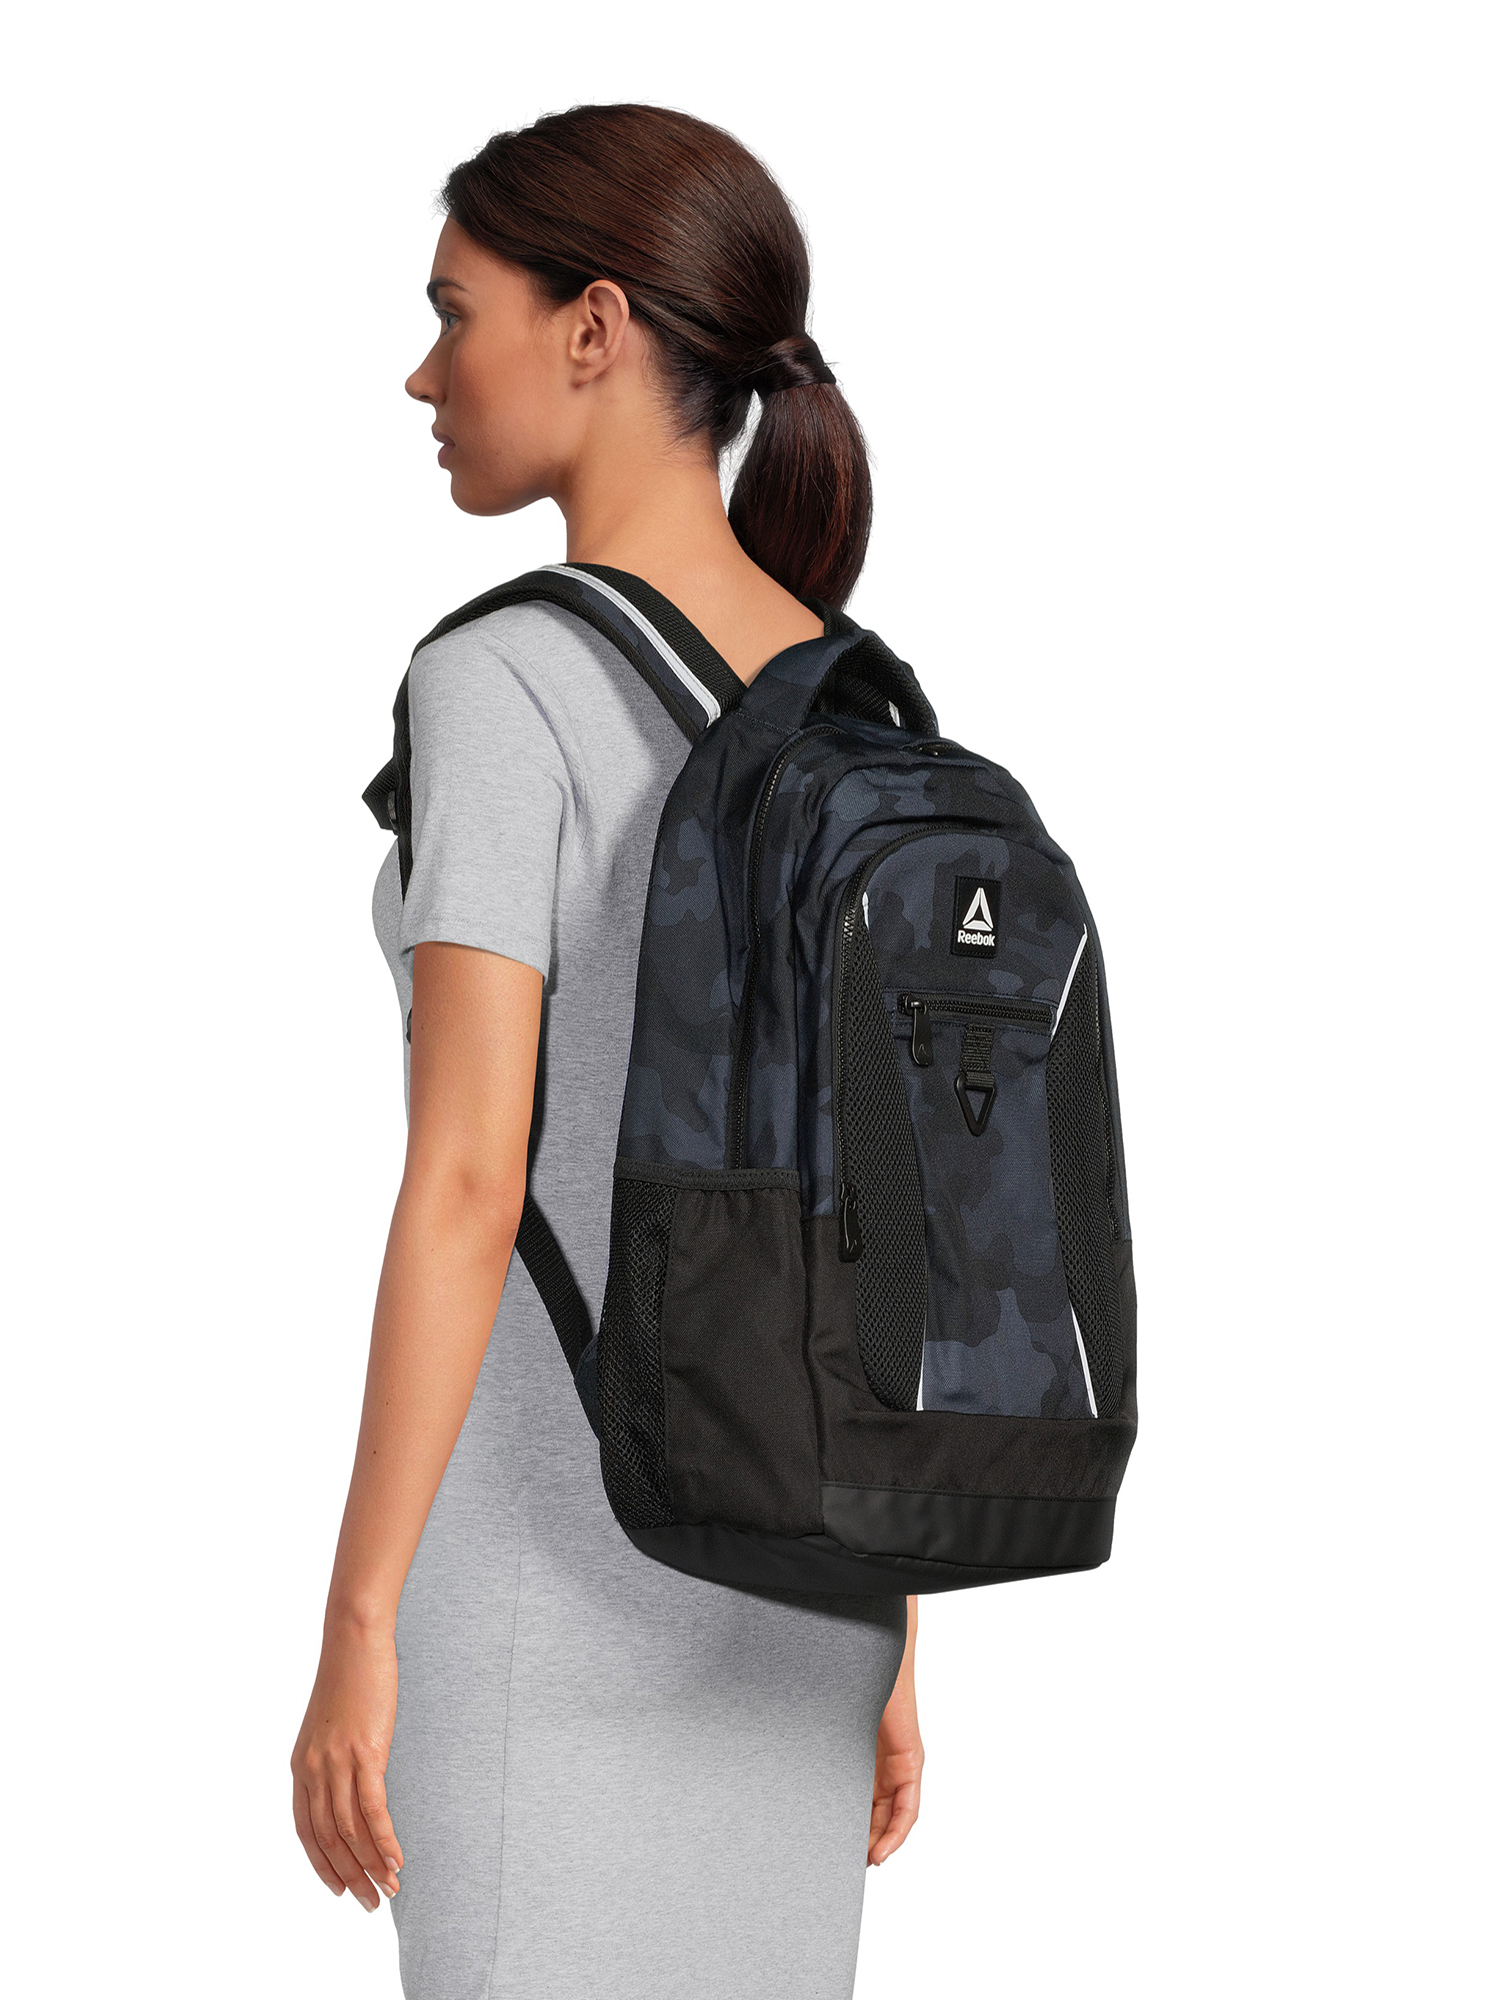 Reebok Unisex Adult Laredo 19.5" Laptop Backpack, Black Camo - image 2 of 5